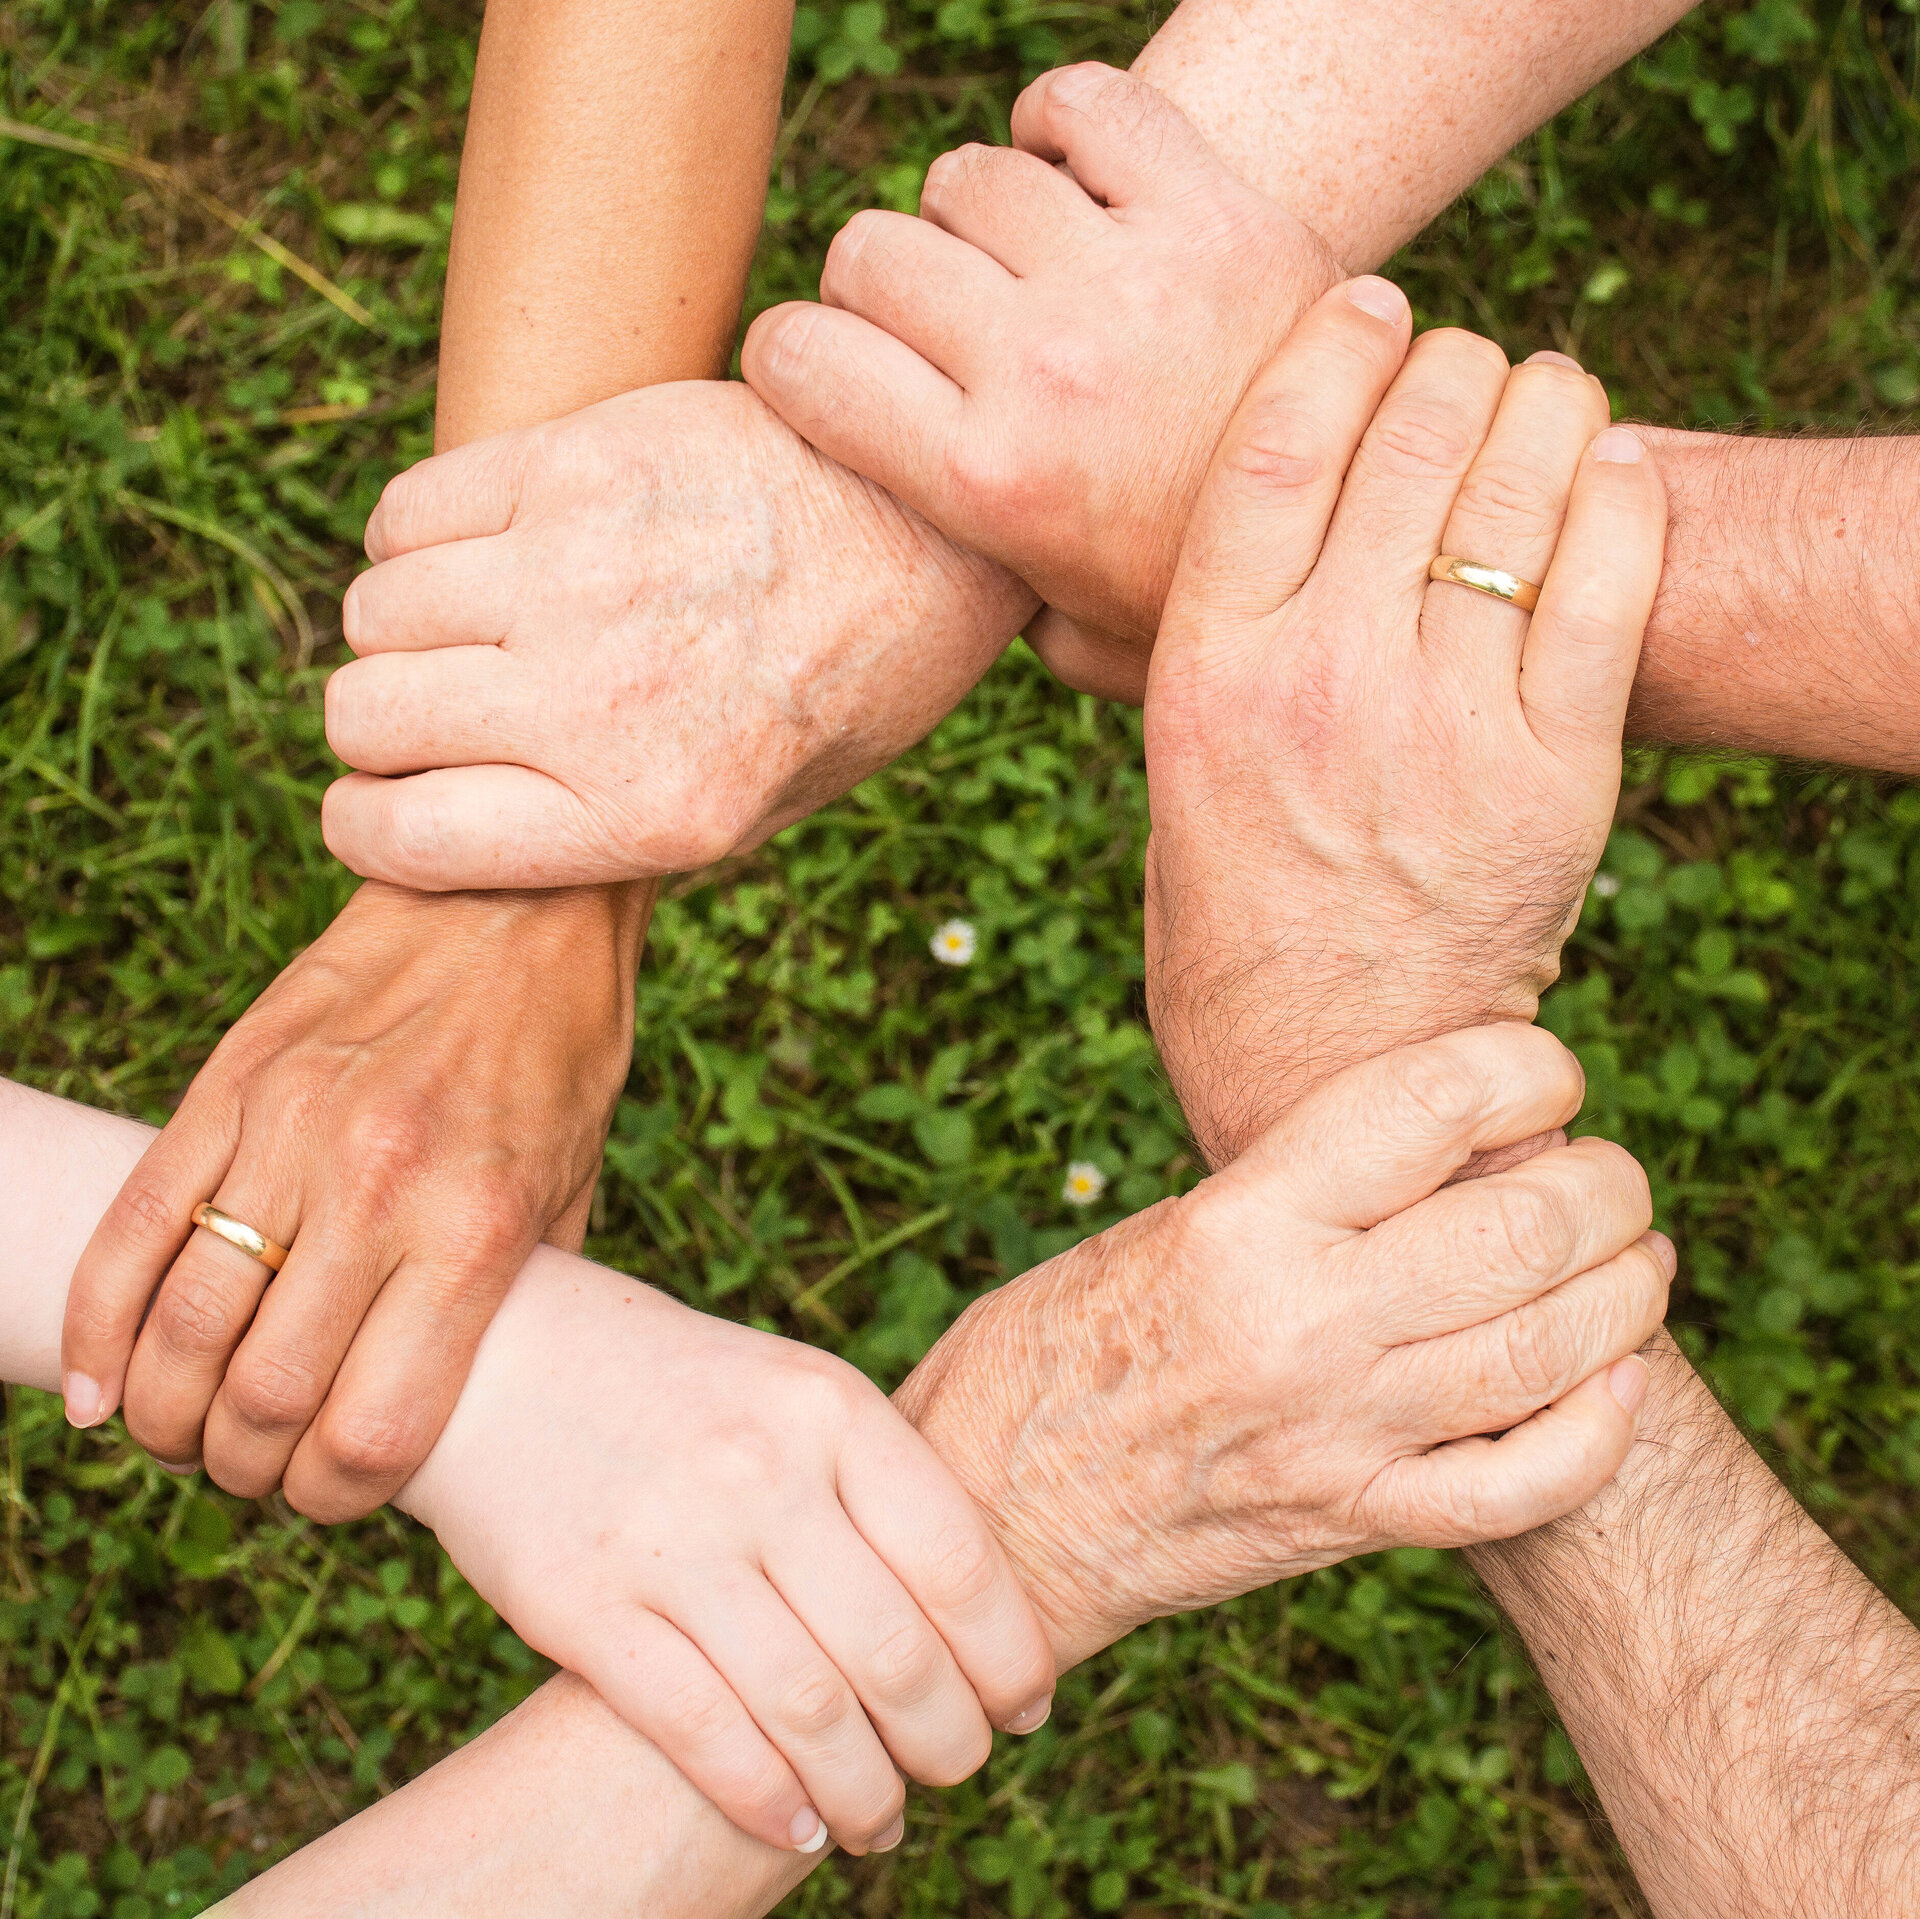 Sechs Personen greifen sich gegenseitig an die Handgelenke und geben sich Halt, indem sie sich ehrenamtlich in der Rheuma-Liga engagieren